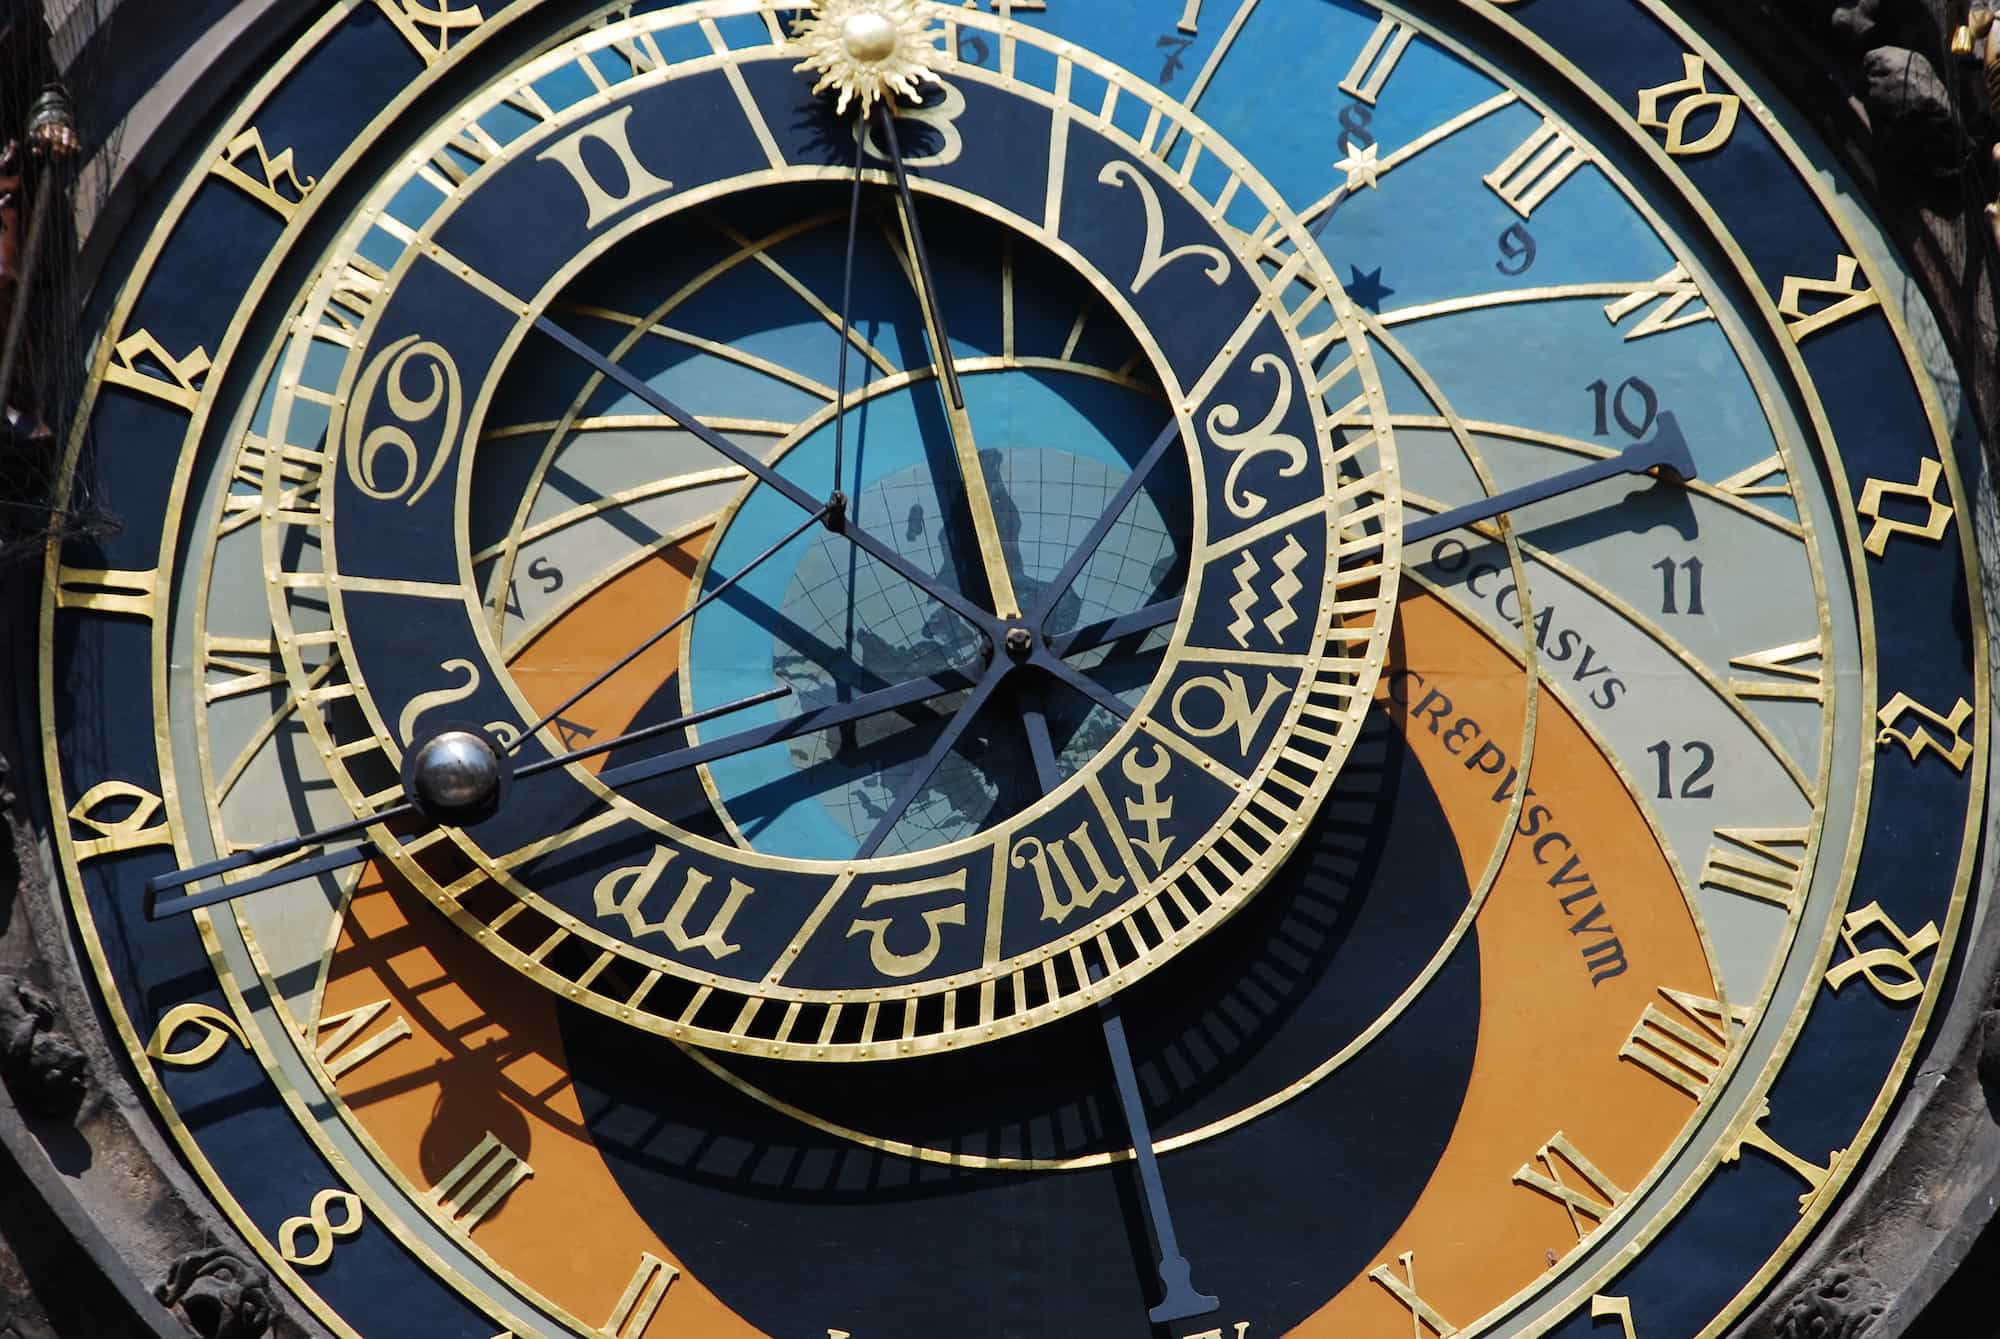 Is the prague clock cursed?